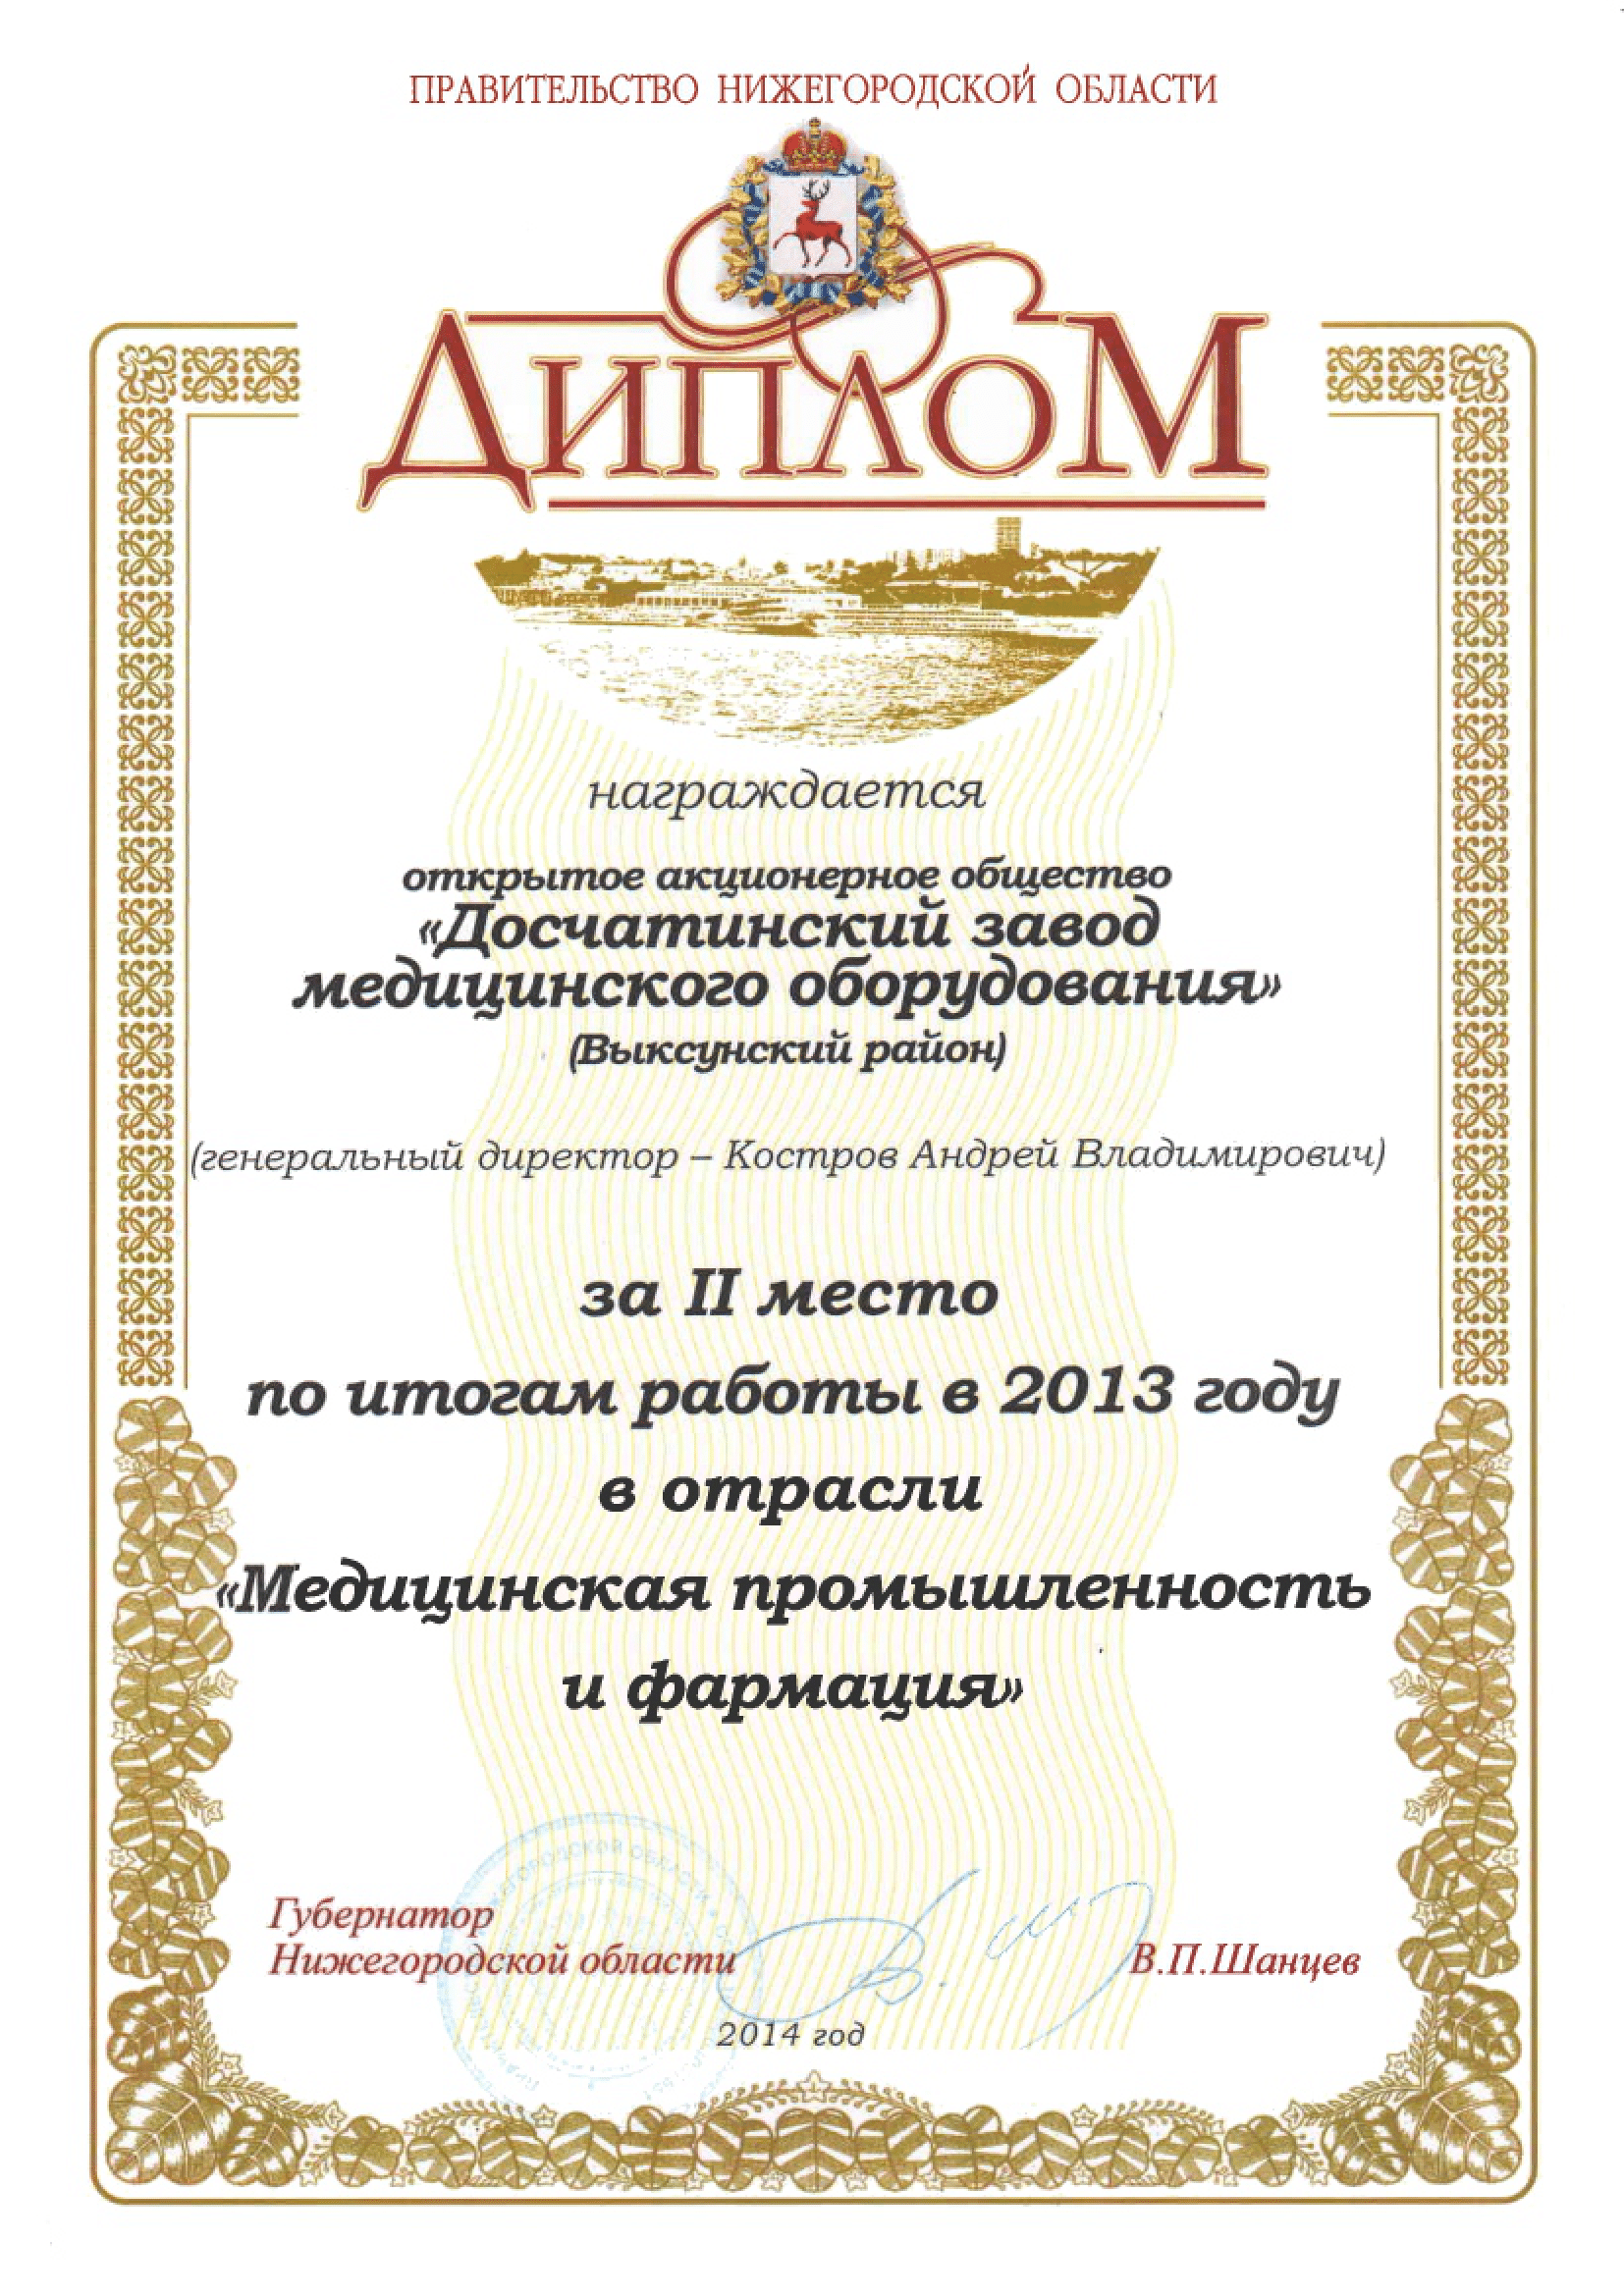 Диплом за II место по итогам работы в 2013 году в отрасли "Медицинская промышленность и фармация"